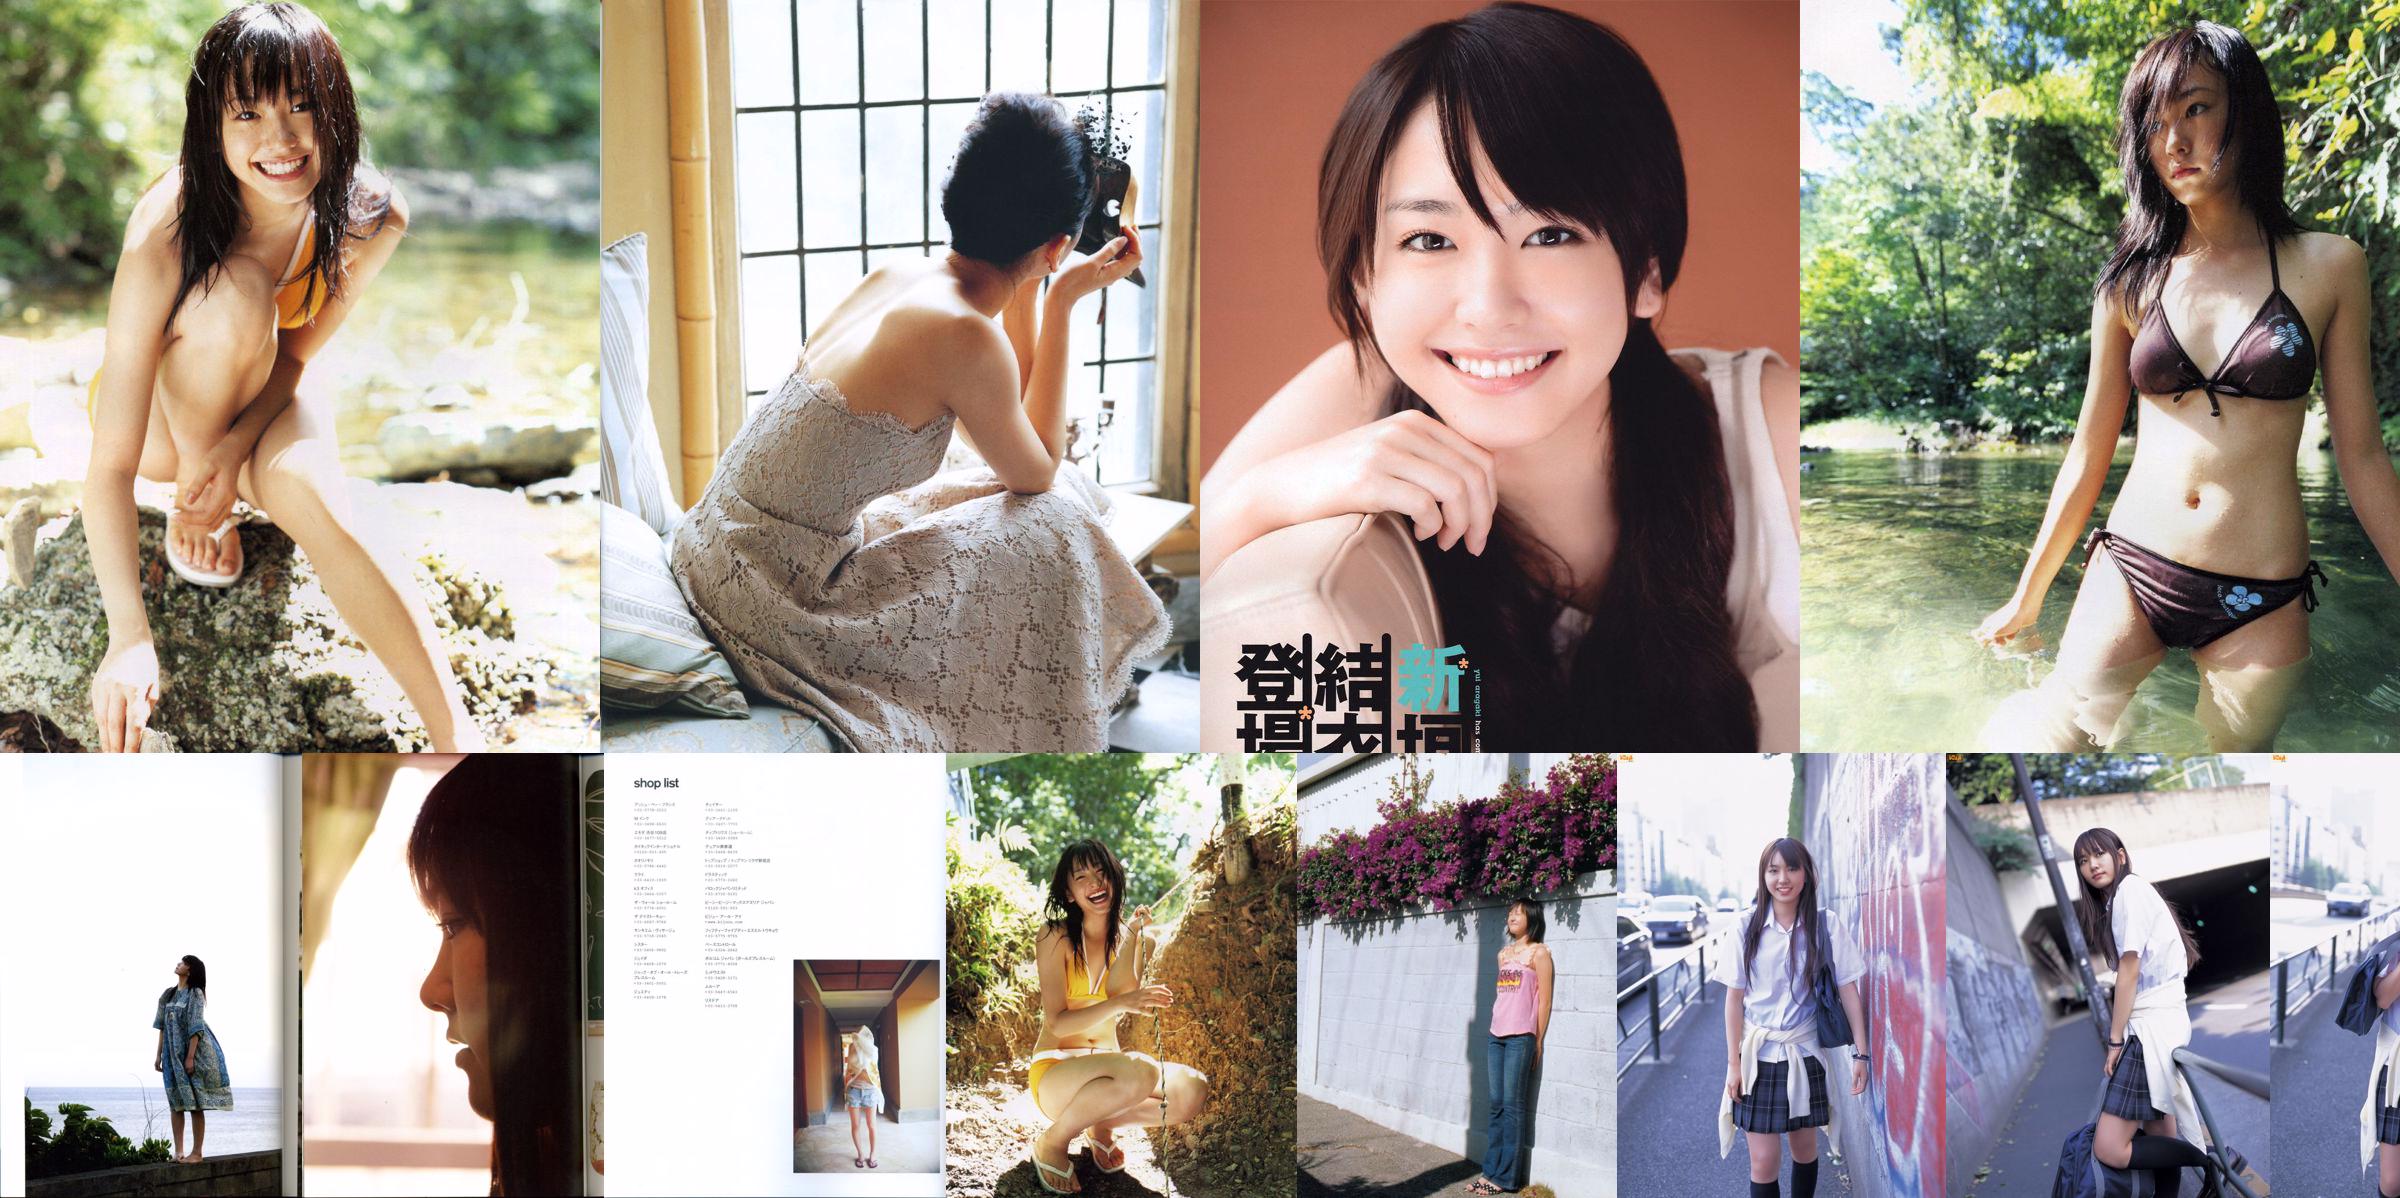 Yui Aragaki "Fashion Photo Magazine 2012" No.38b04c Pagina 51